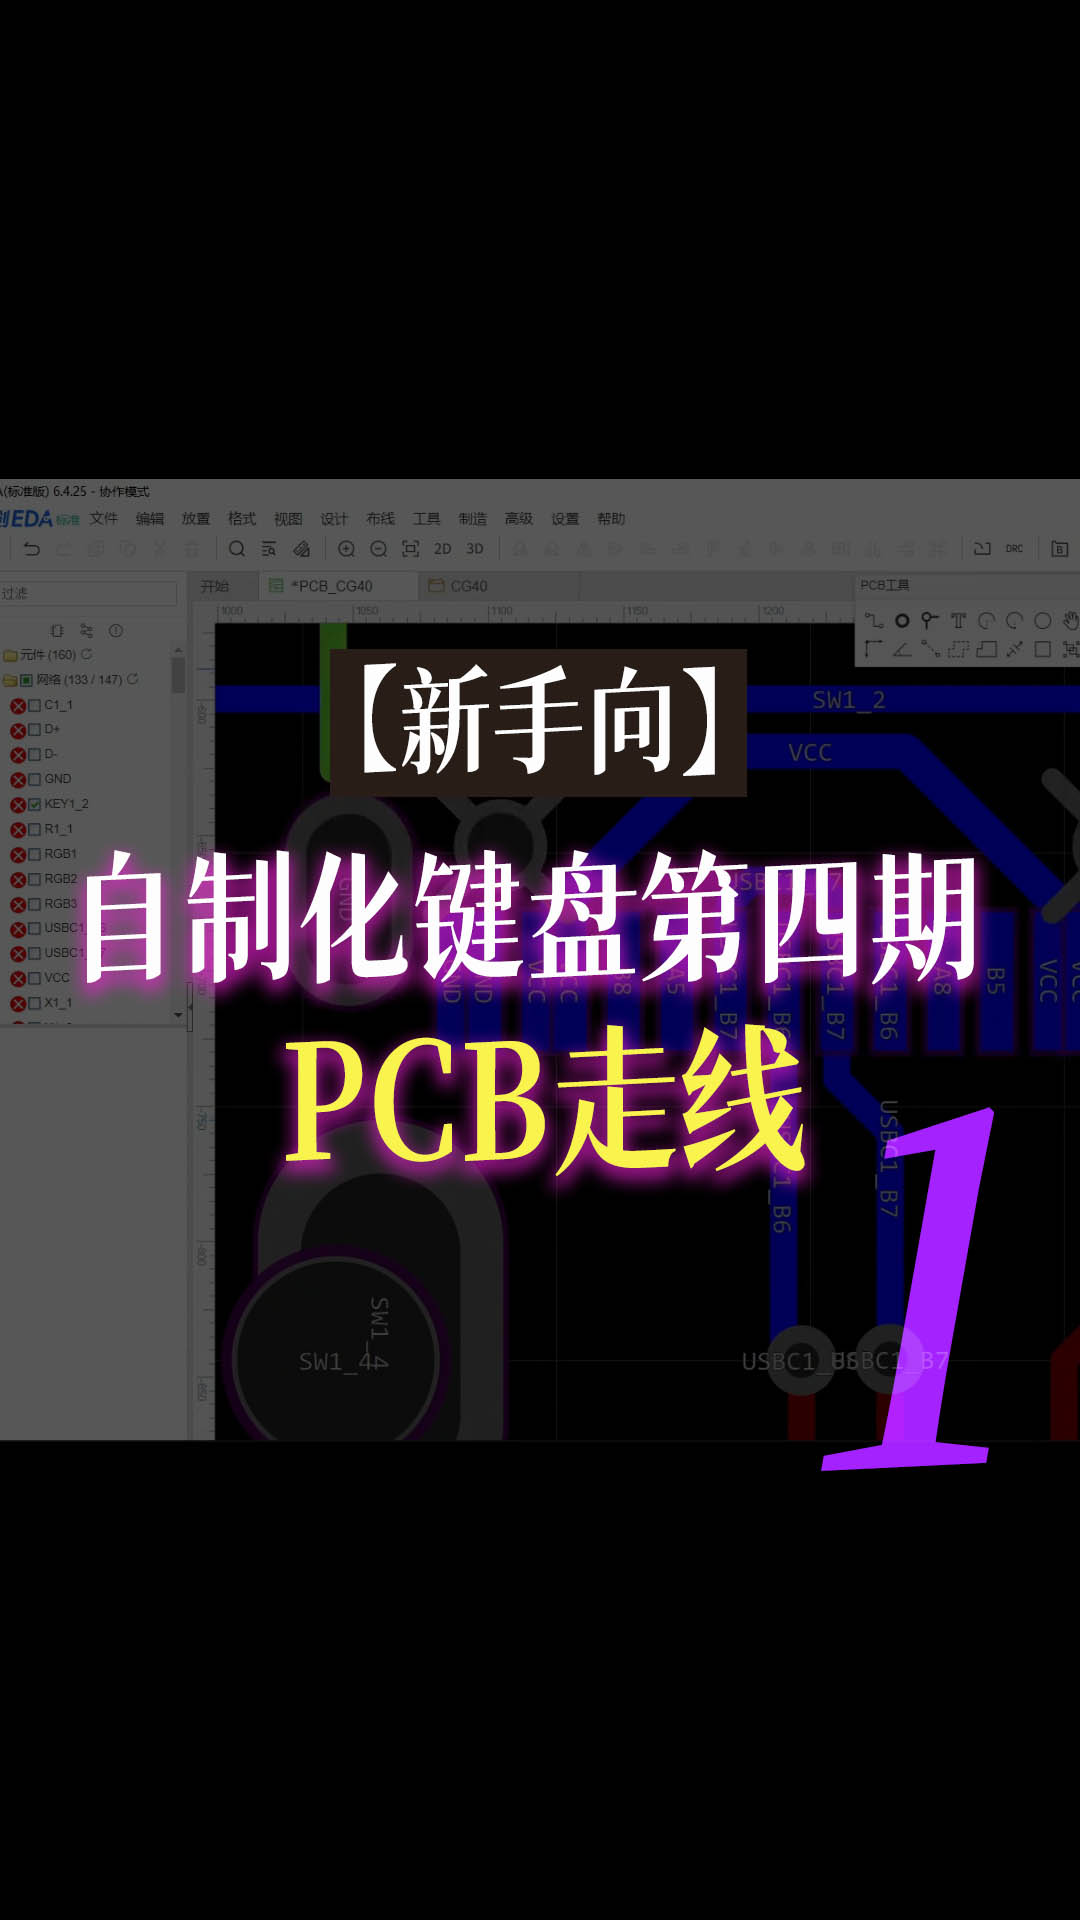 【新手向】自制化键盘第四期—PCB走线1#跟着UP主一起创作吧 #pcb设计 